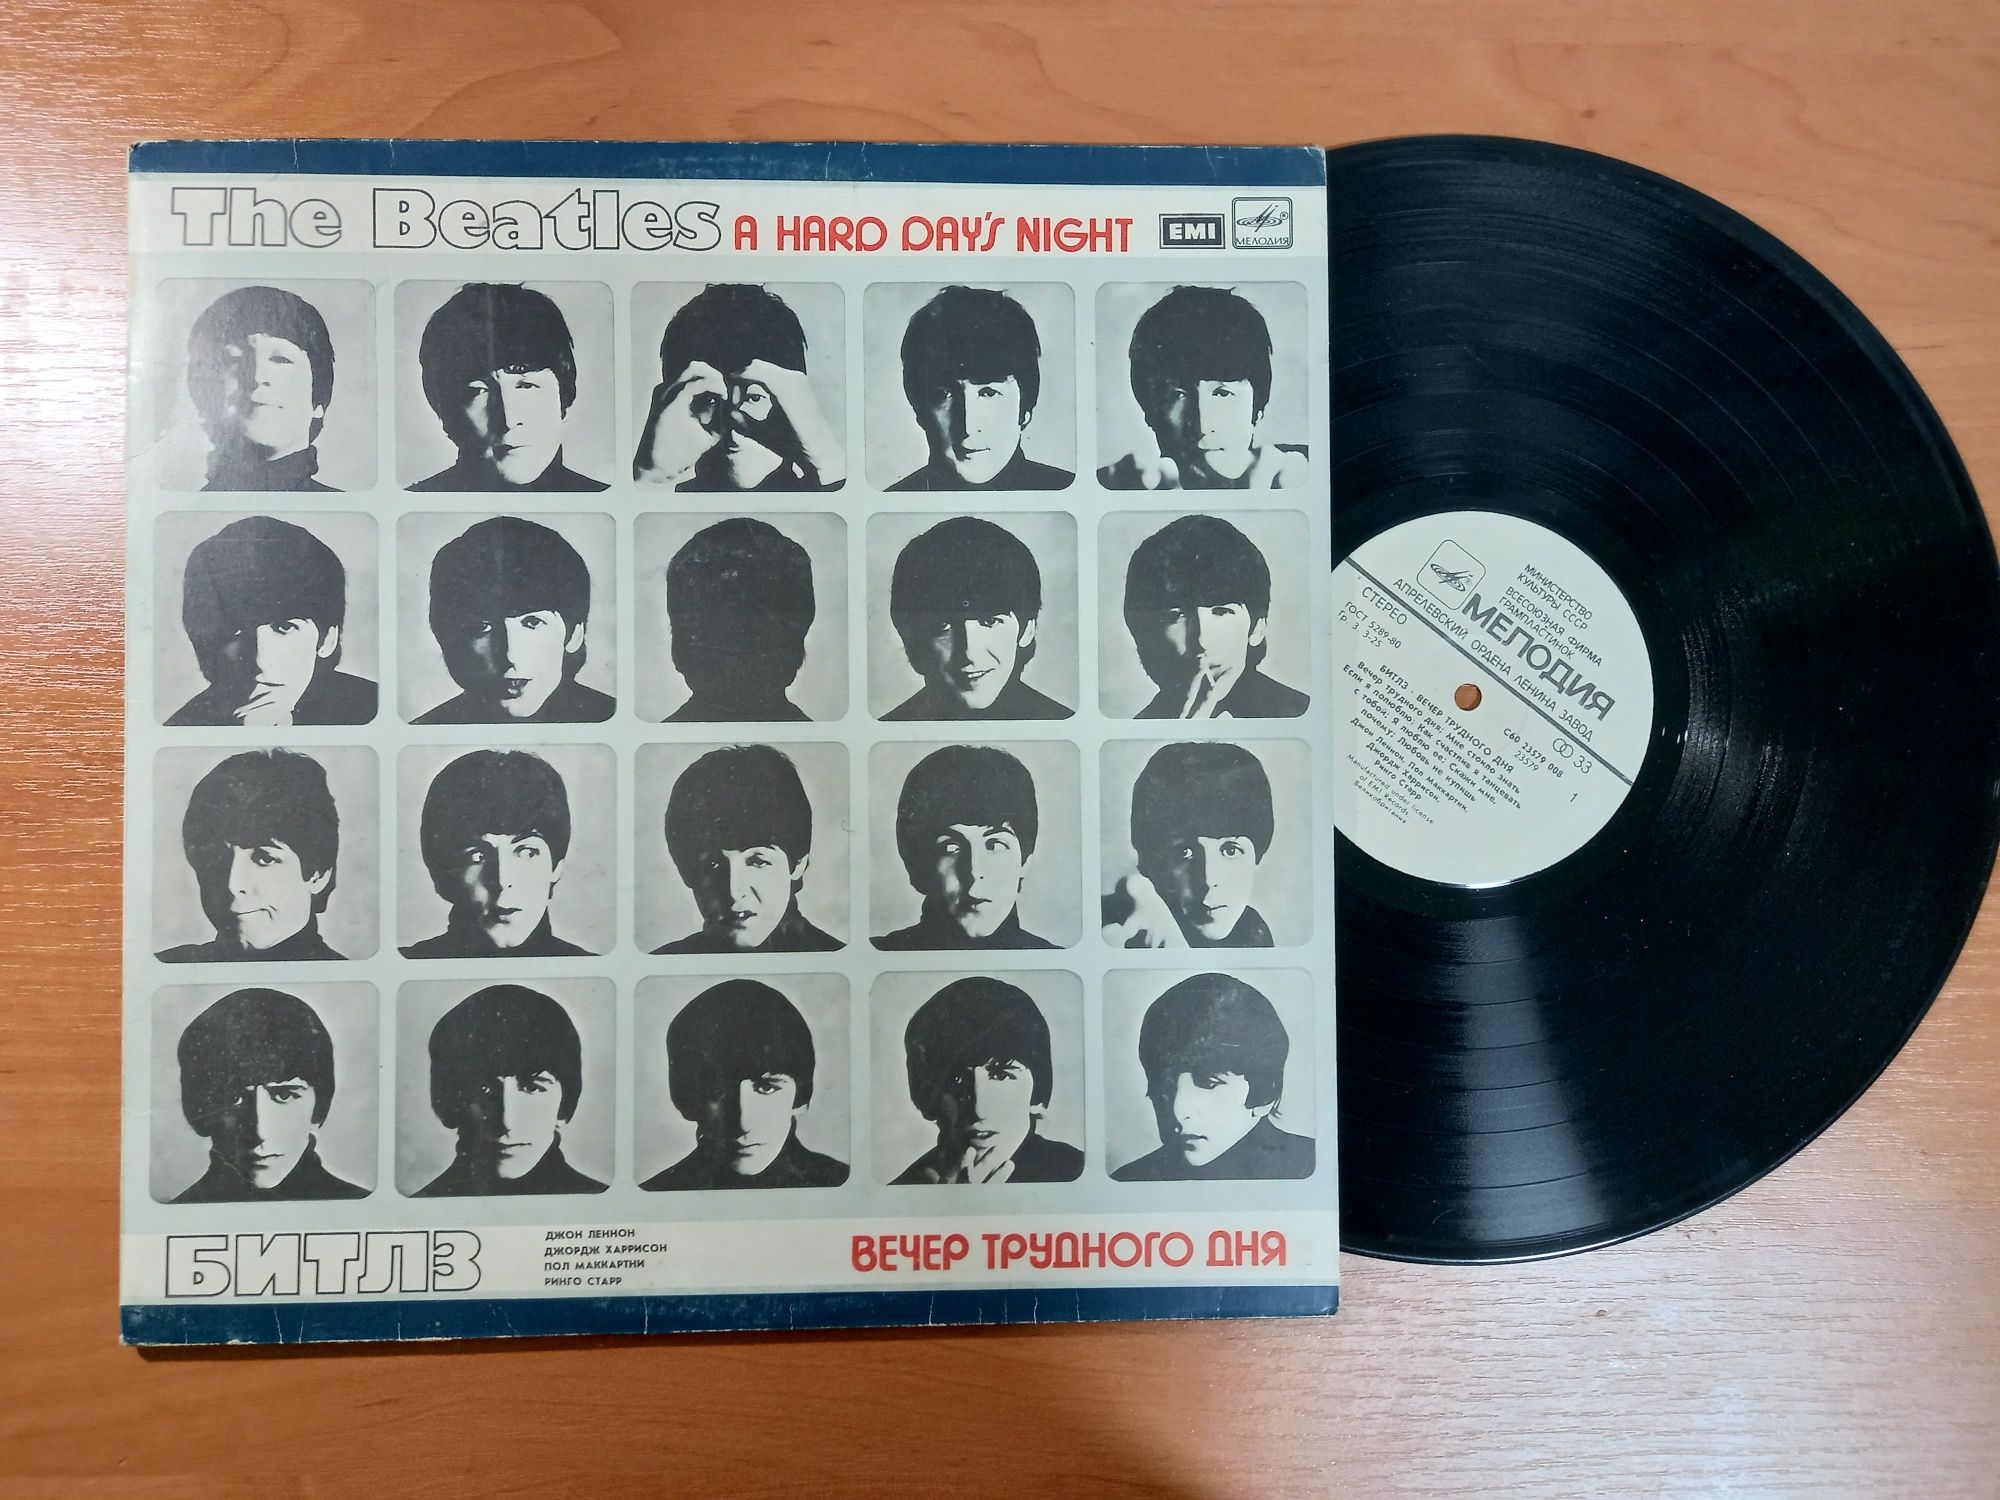 Вінілові пластинки груп "The Beatles",